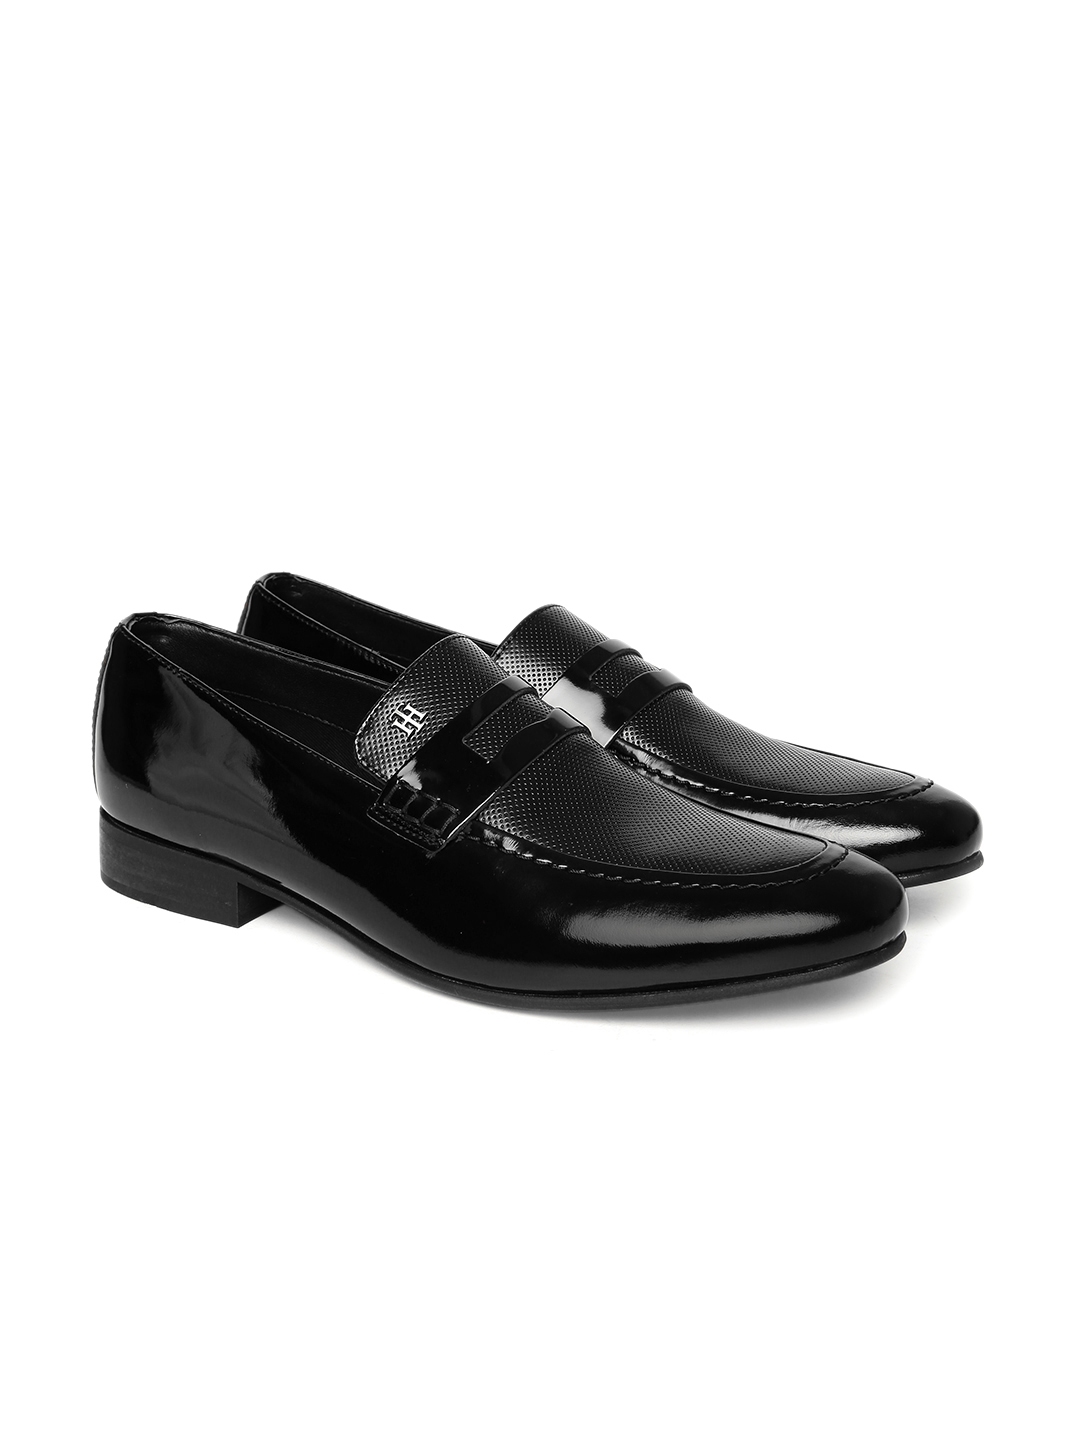 tommy hilfiger shoes formal